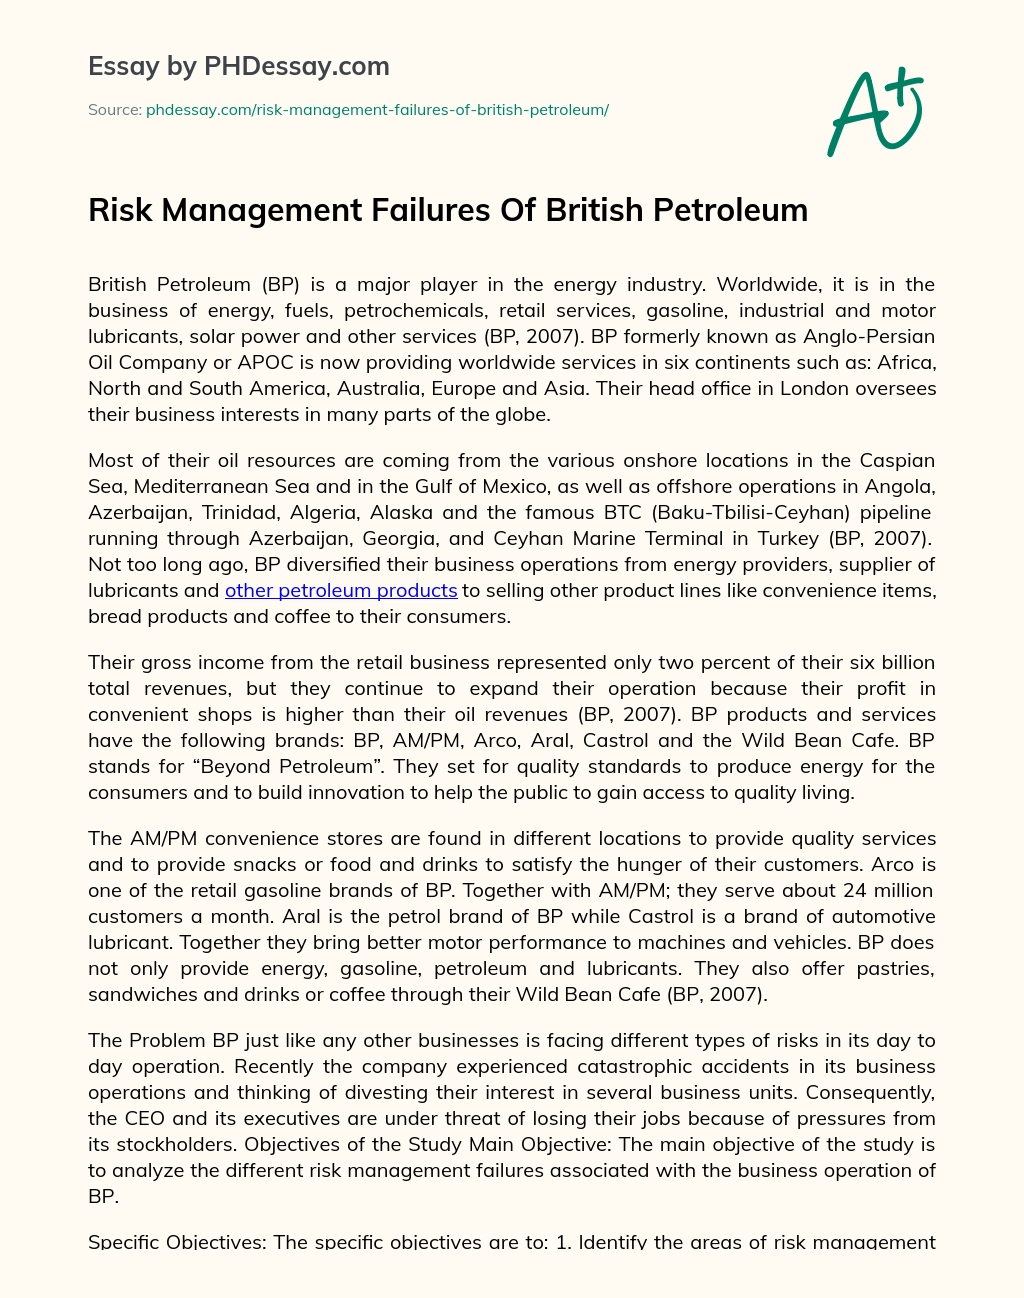 Risk Management Failures Of British Petroleum essay